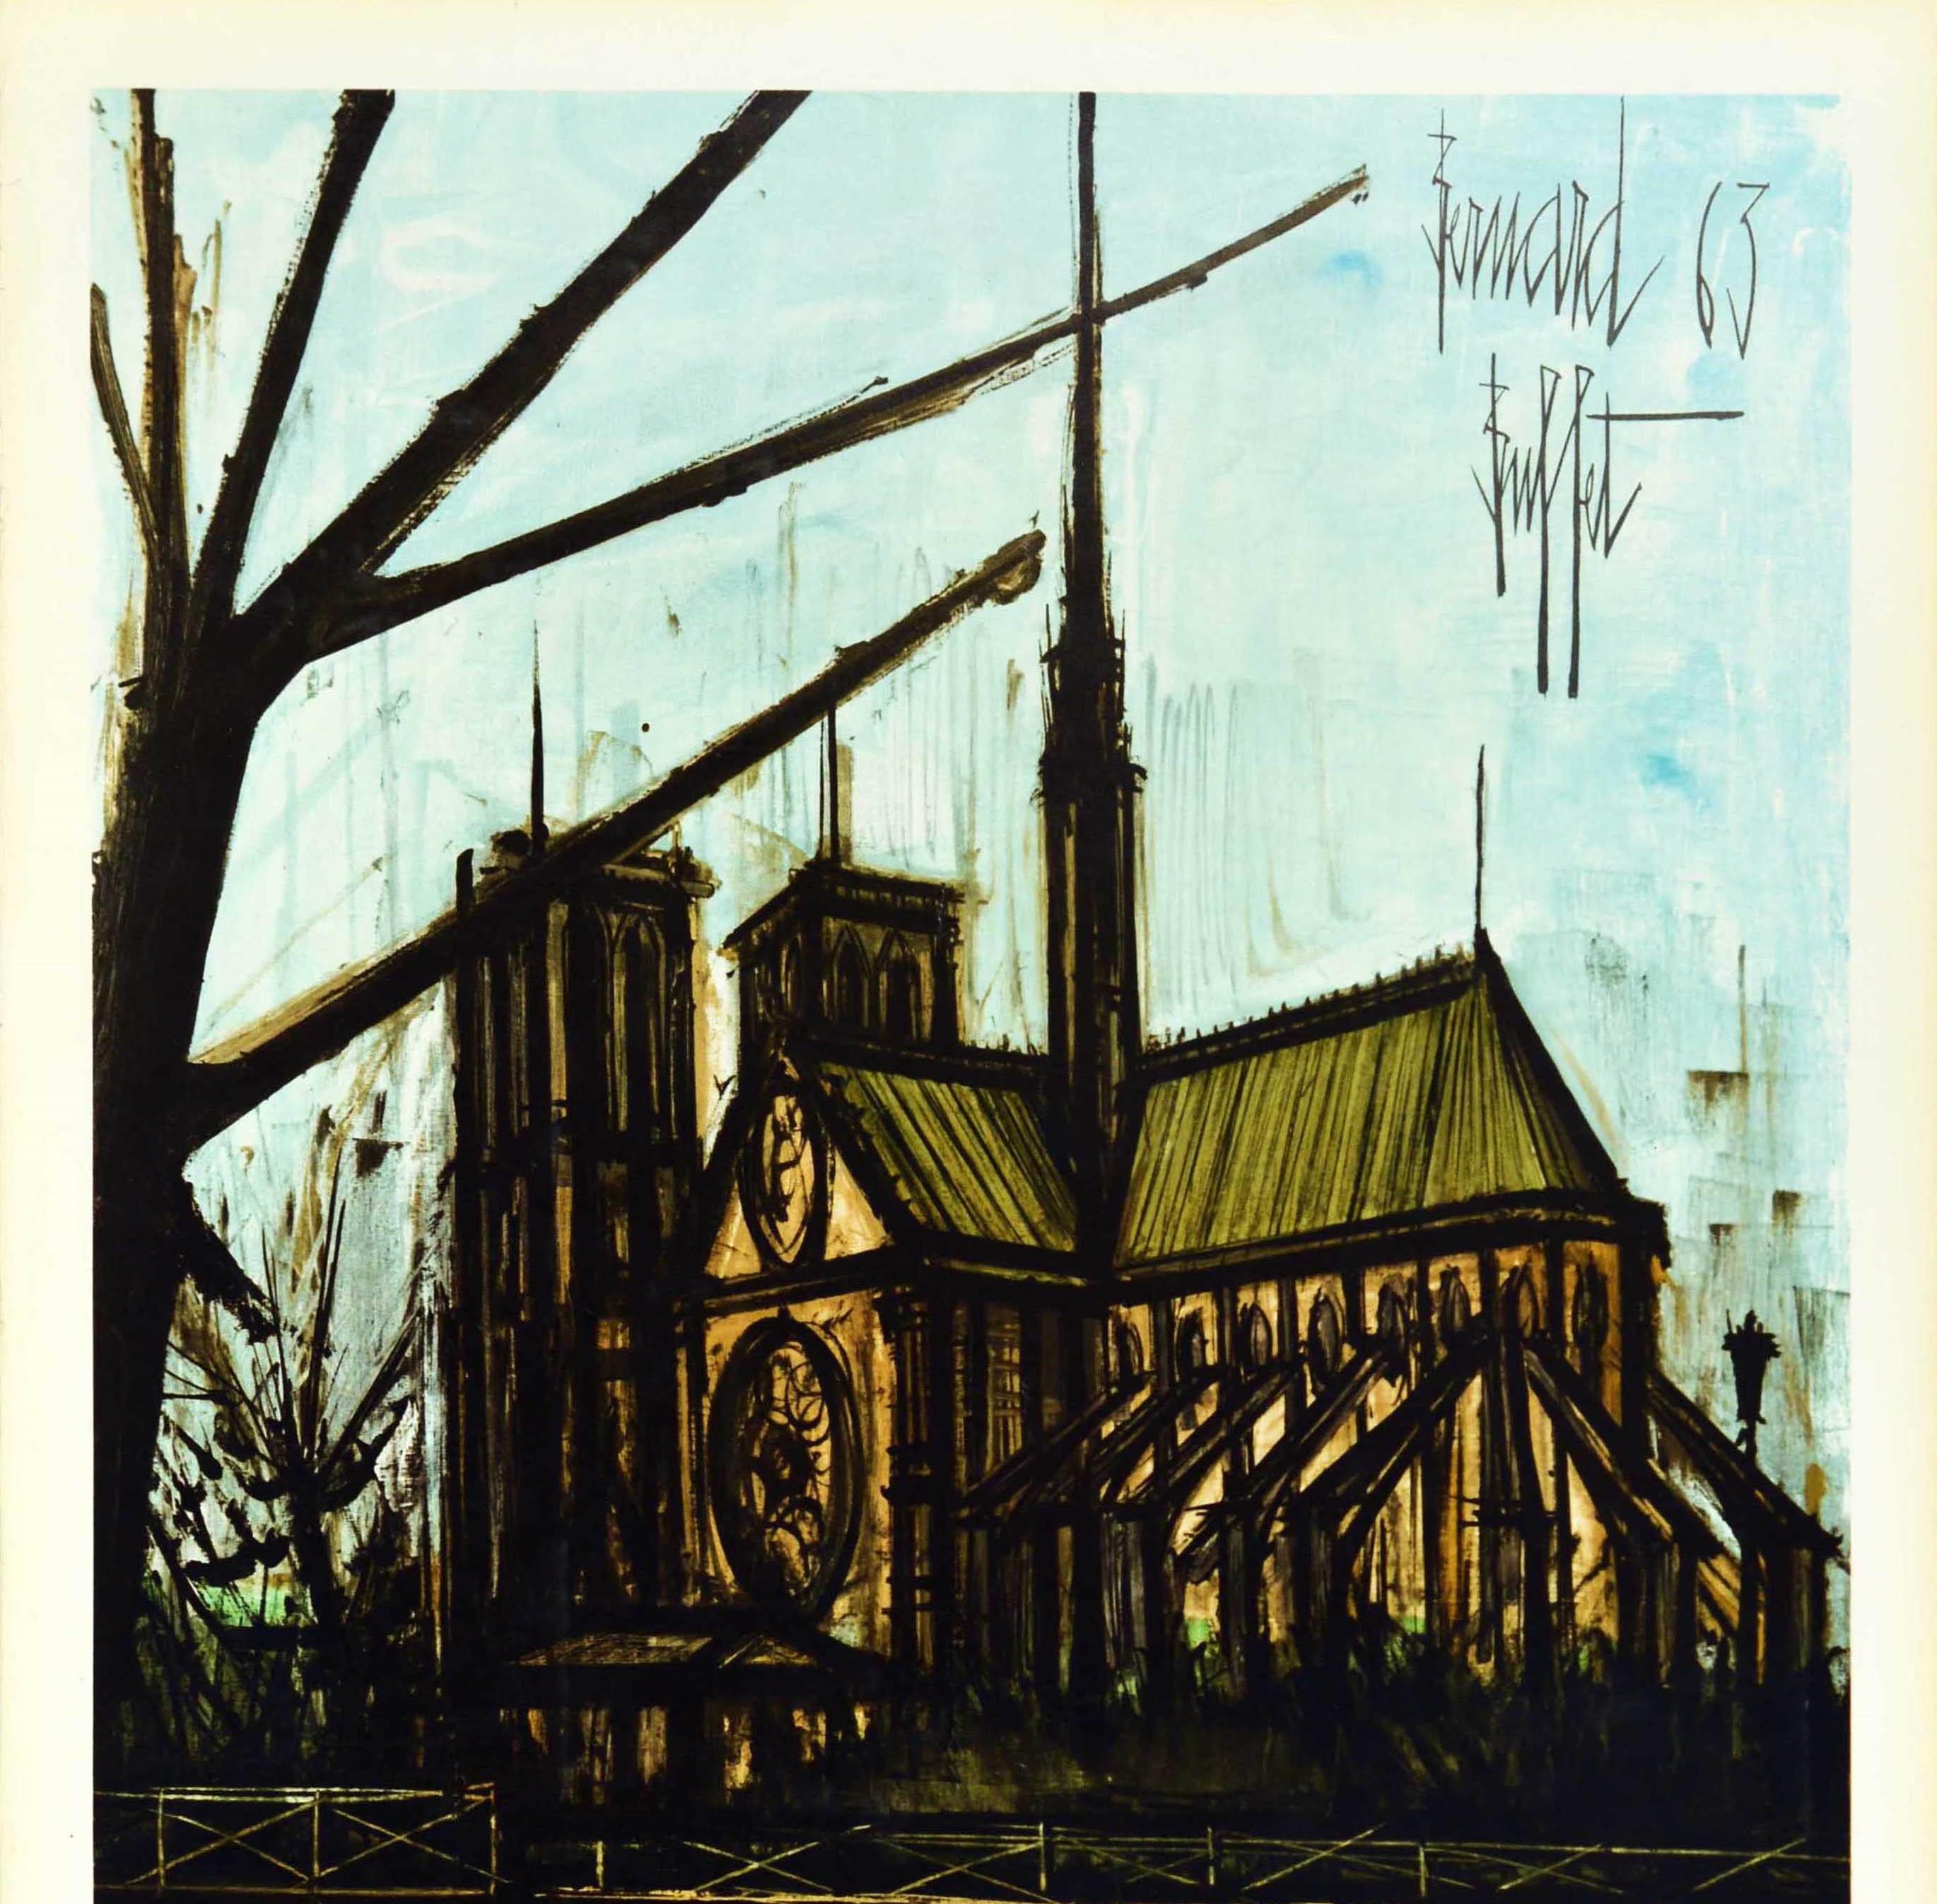 Original-Reiseplakat der französischen Eisenbahn, das für den Tourismus in Paris wirbt, mit einer Illustration des französischen expressionistischen Malers Bernard Buffet (1928-1999), die die historische mittelalterliche Kathedrale Notre Dame auf